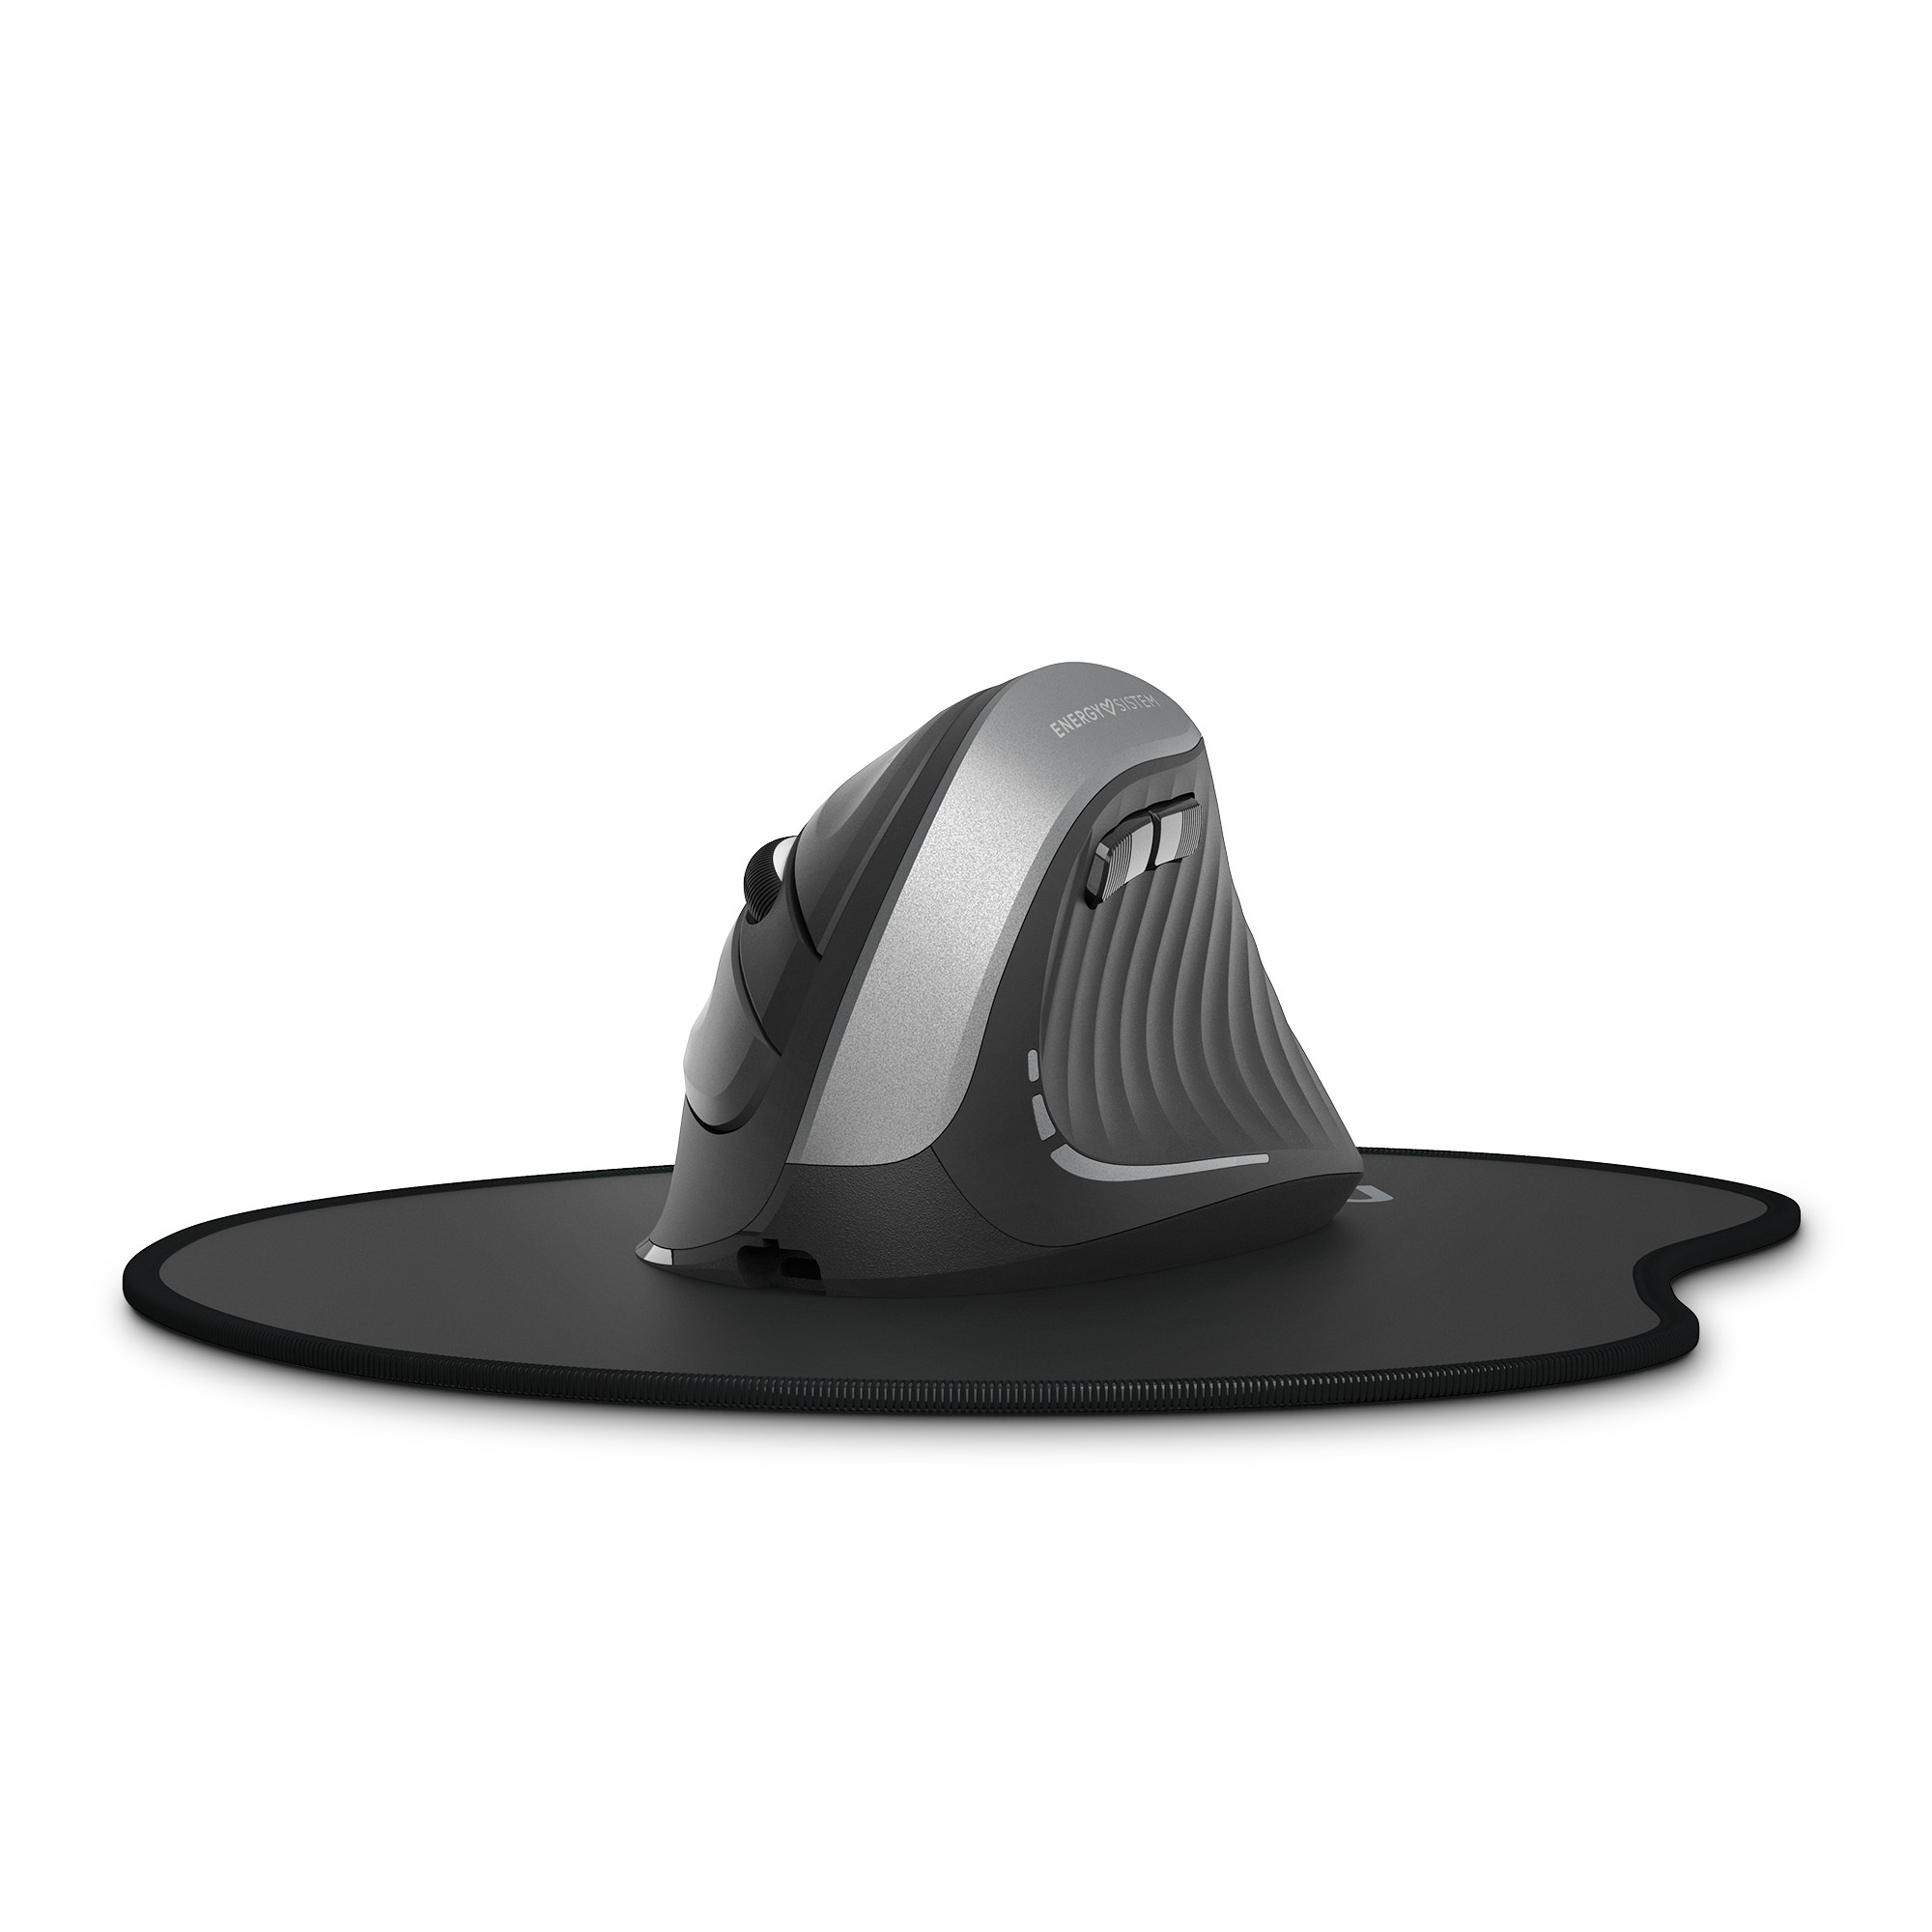 Vertikale kabellose Maus mit ergonomischen Design in schwarz